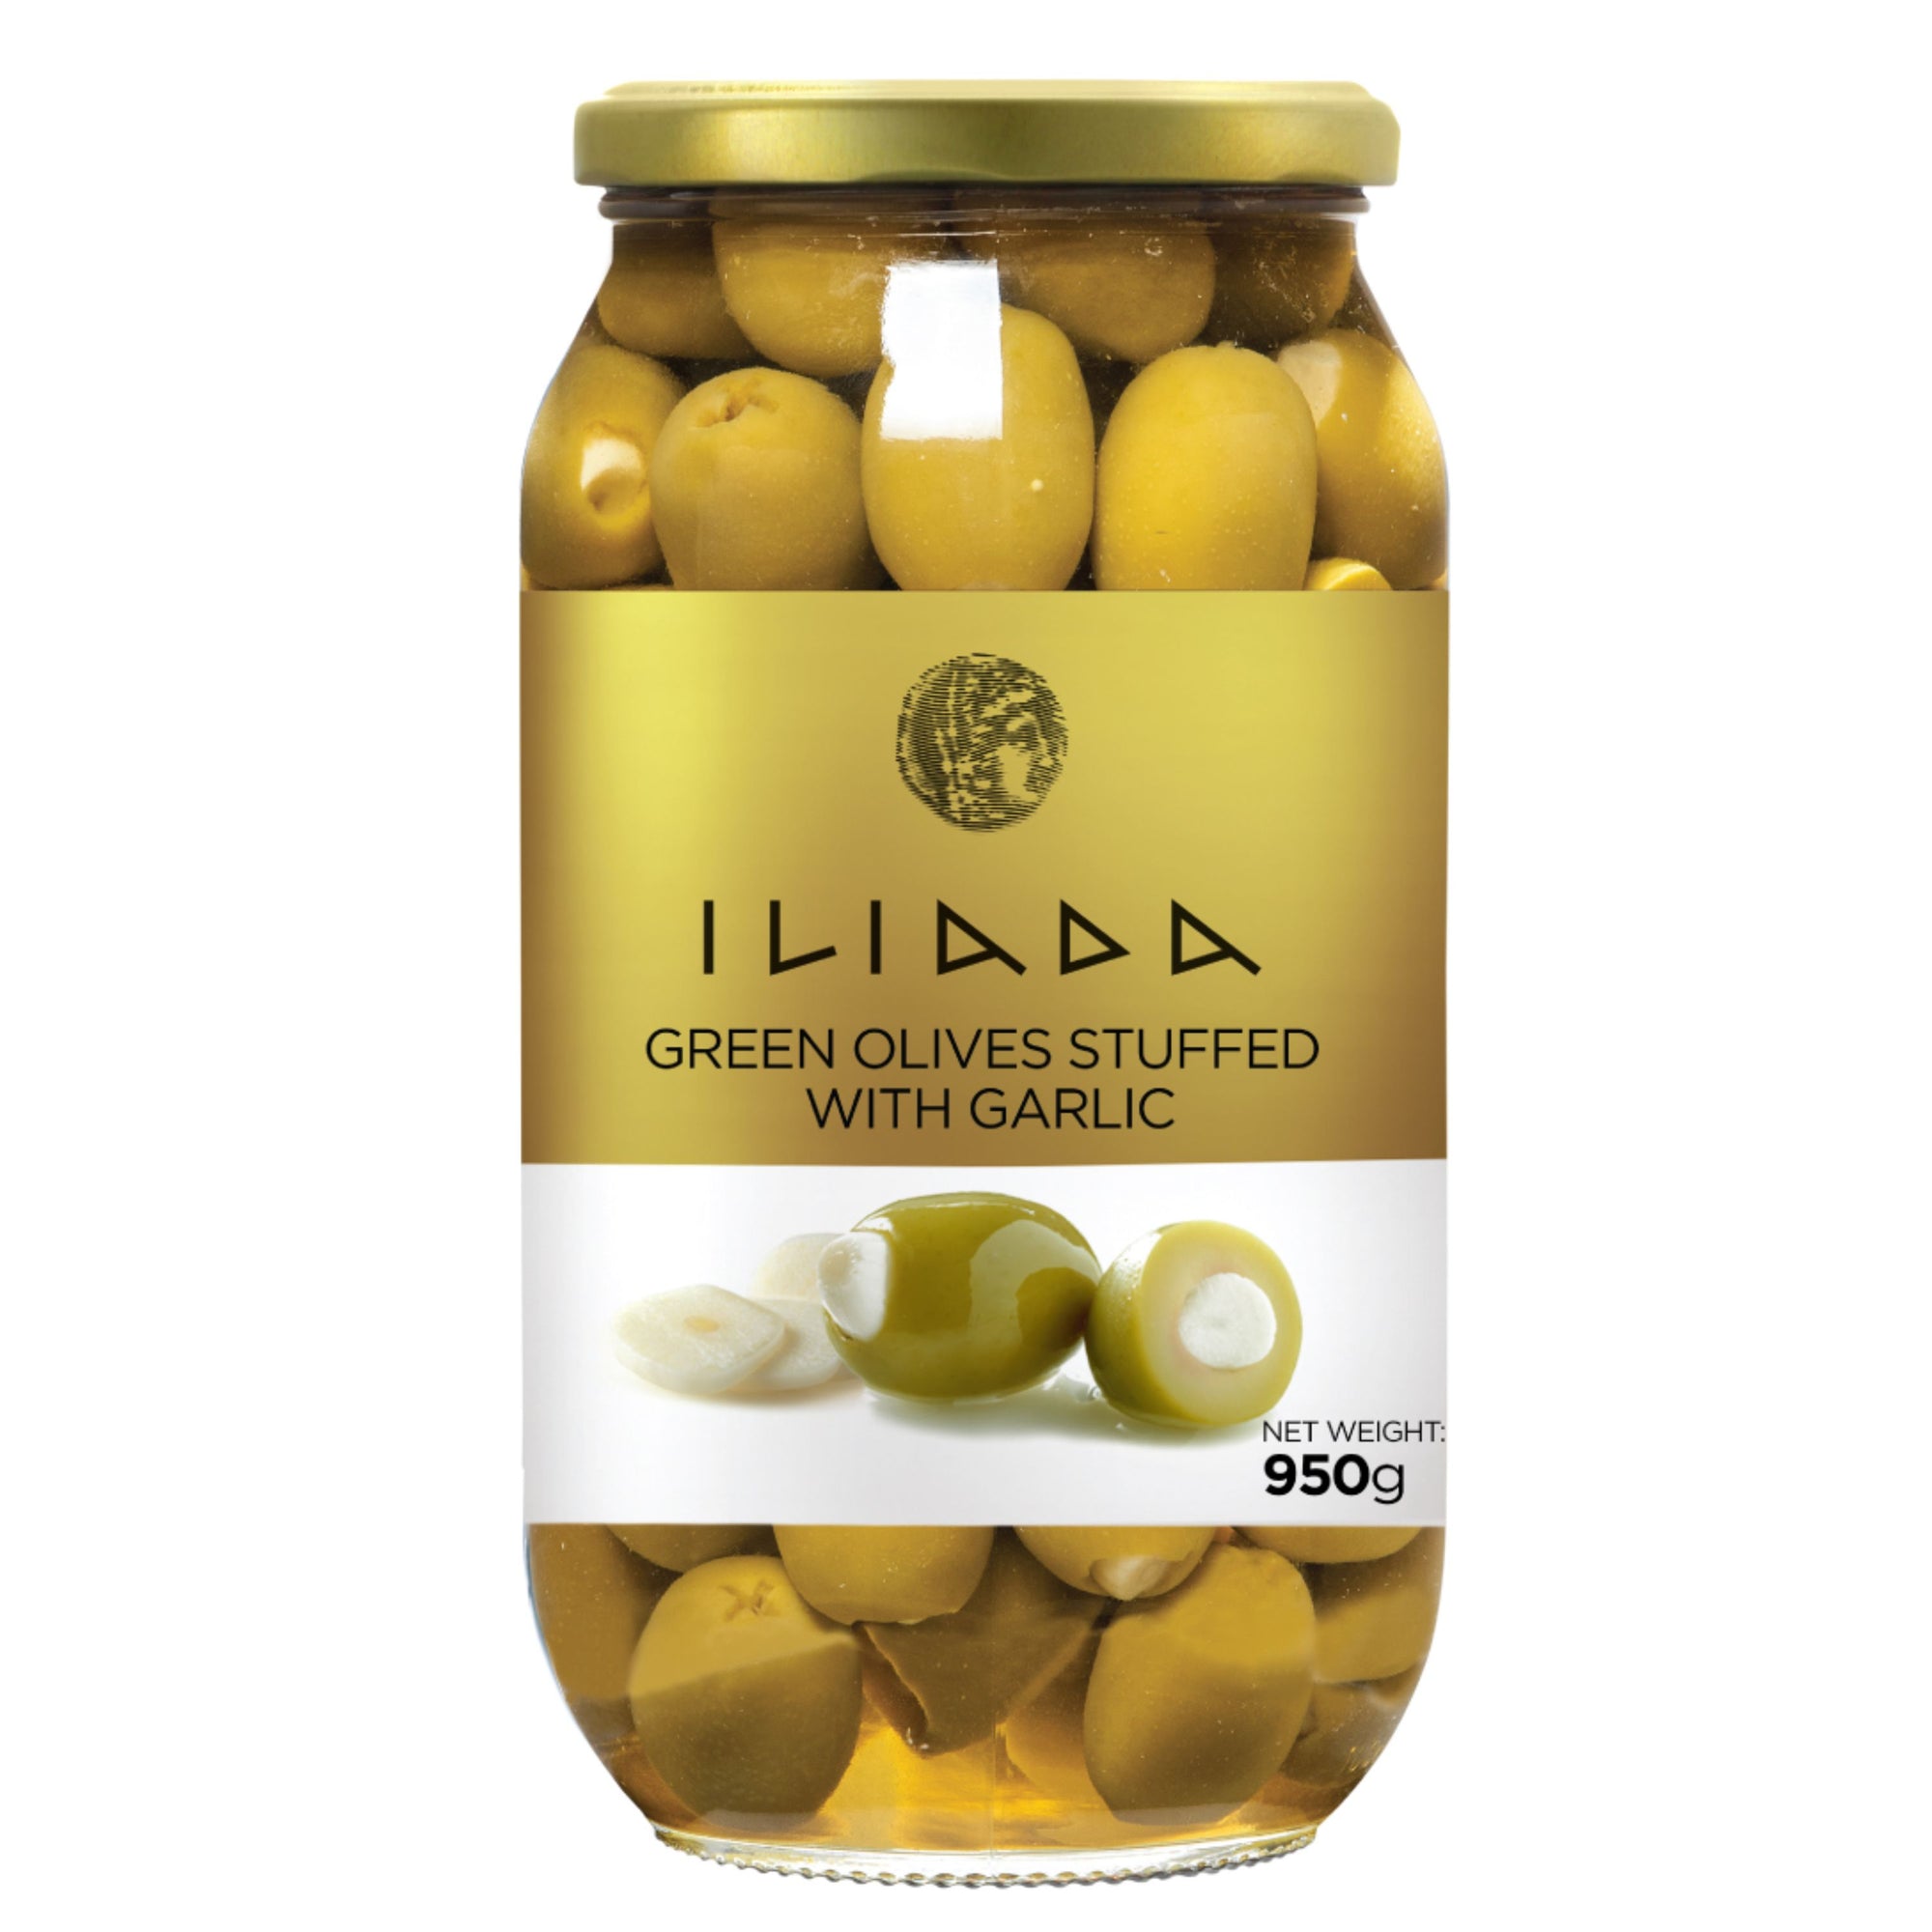 Green Olives stuffed w/ Garlic 'Iliada' 950g